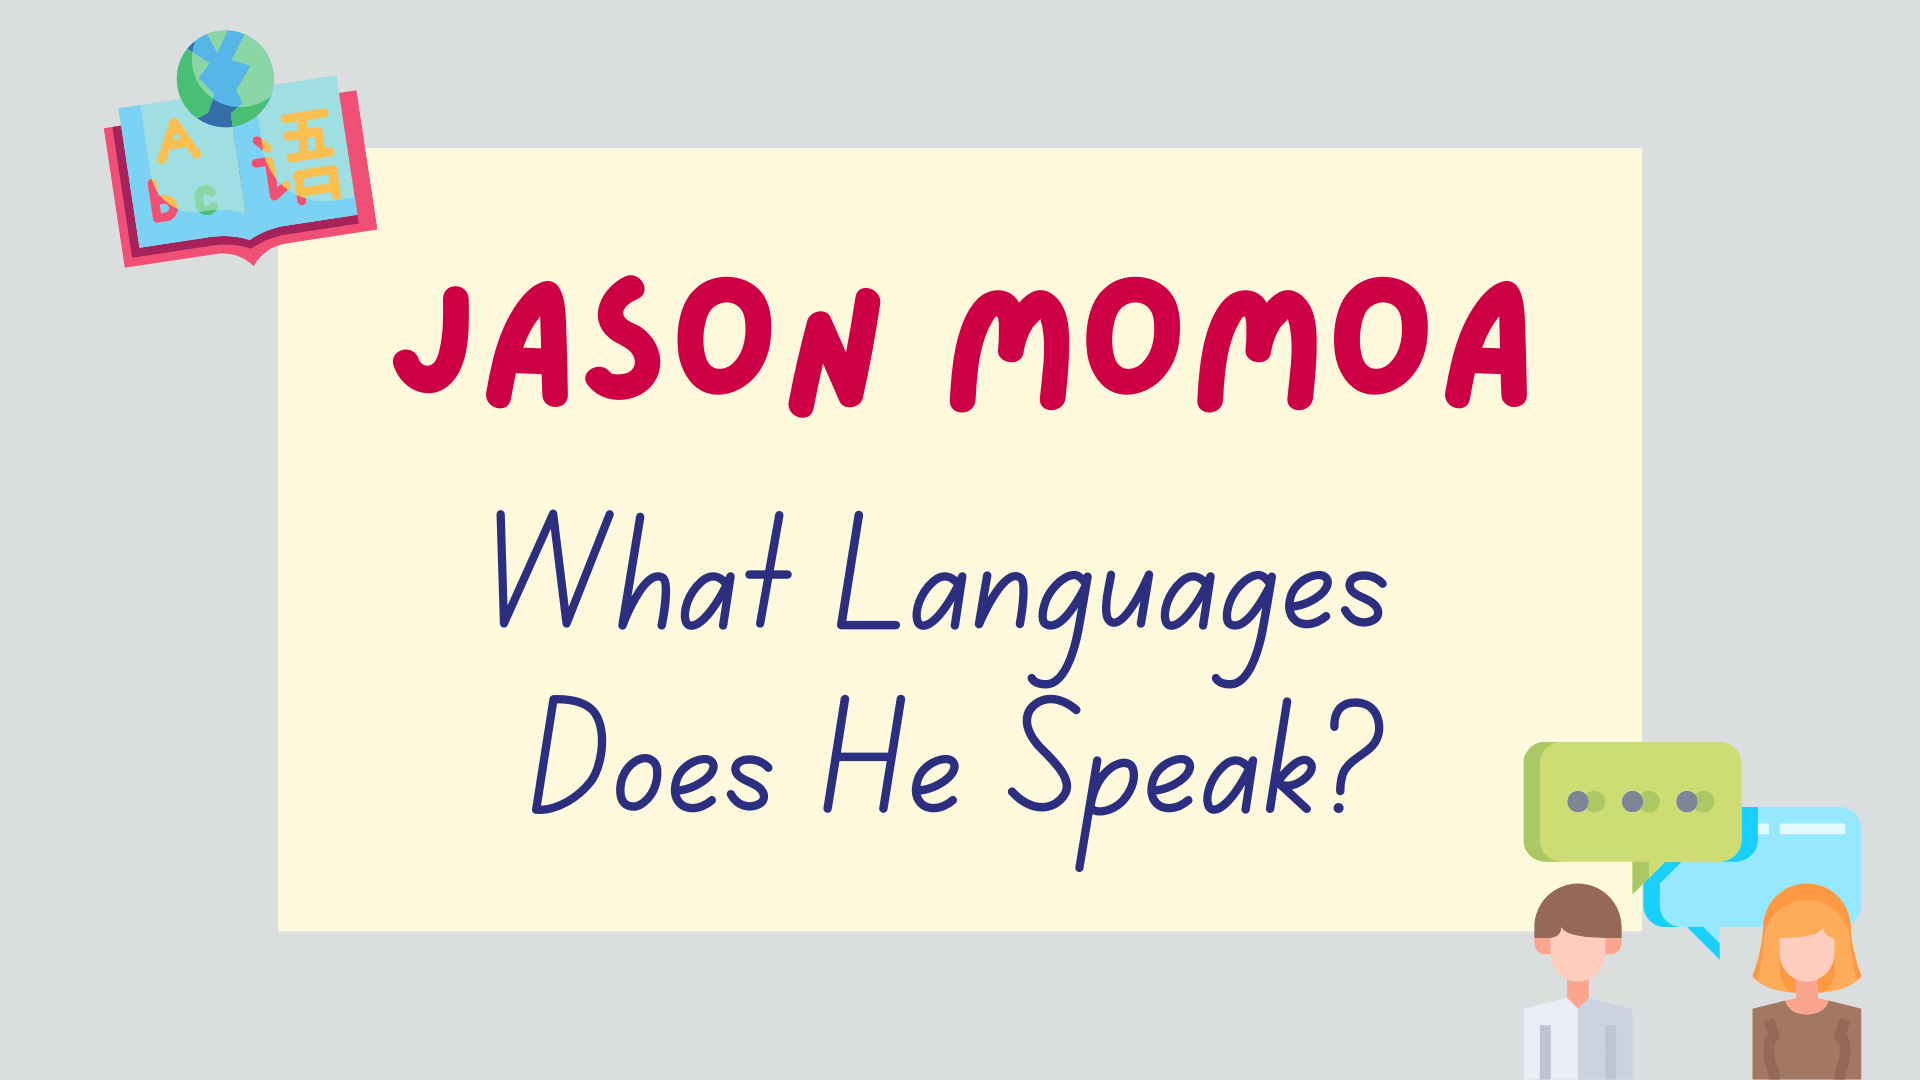 What languages does Jason Momoa speak - featured image